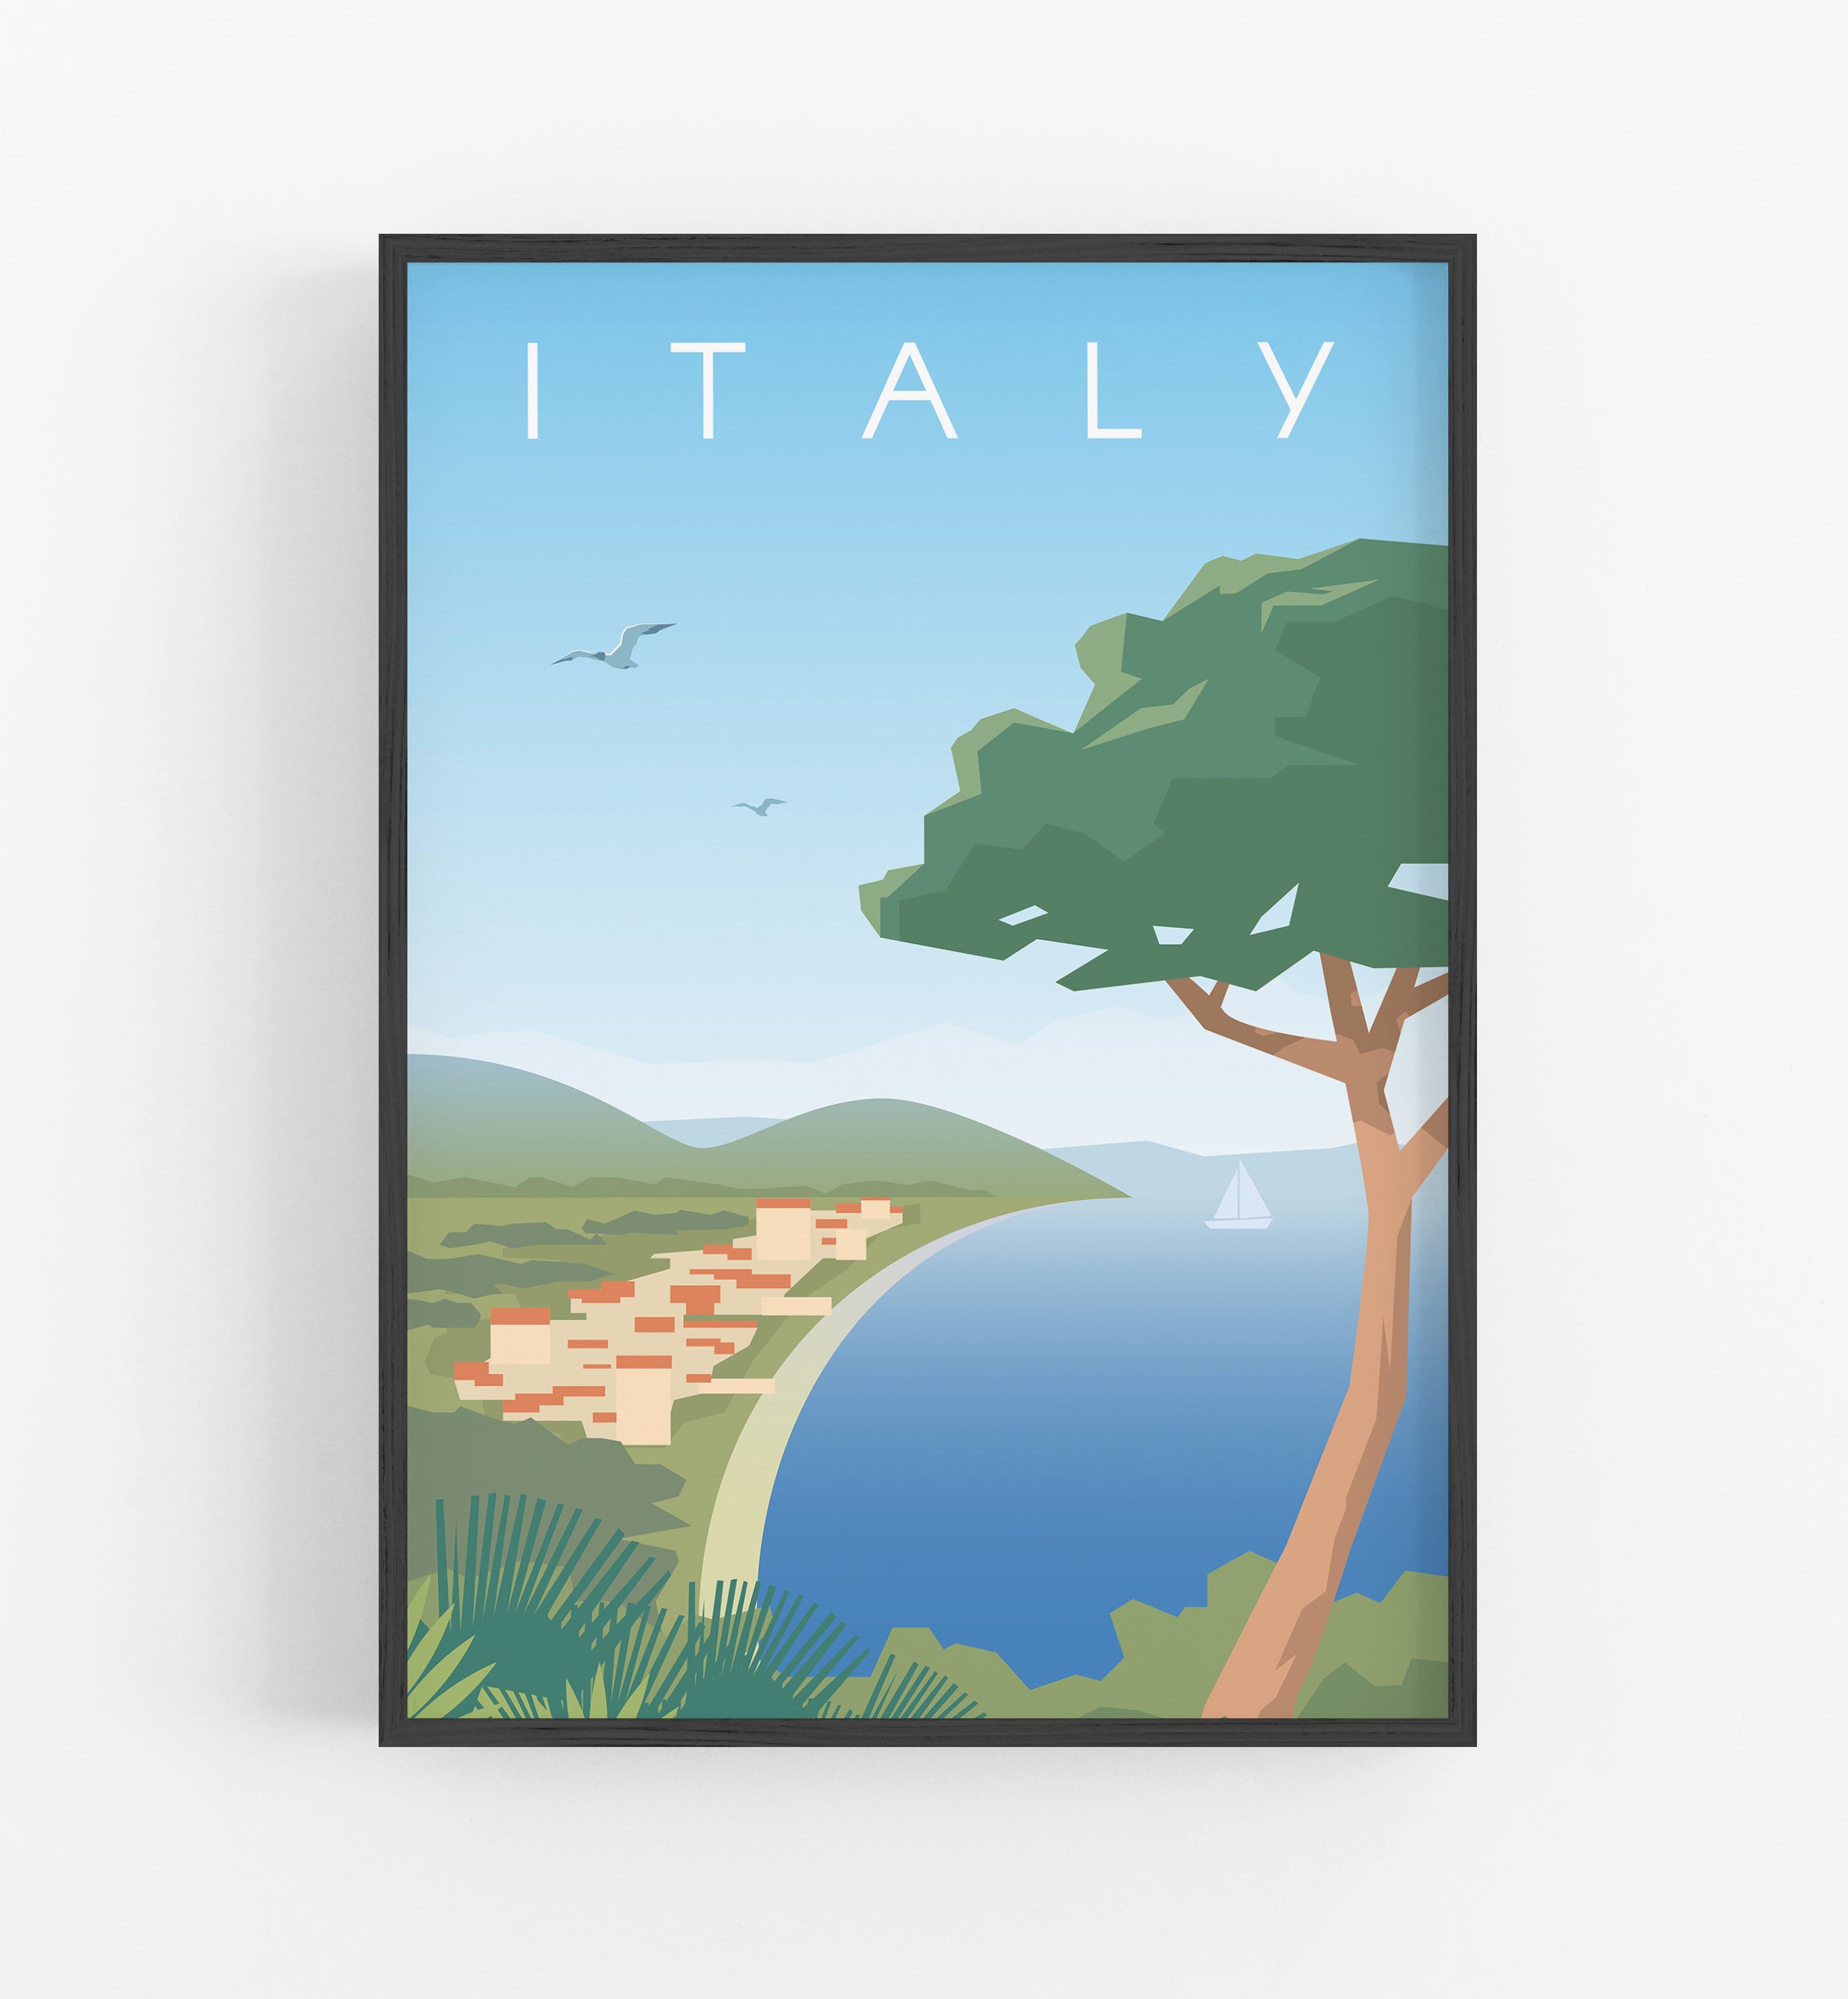 Italia Travel